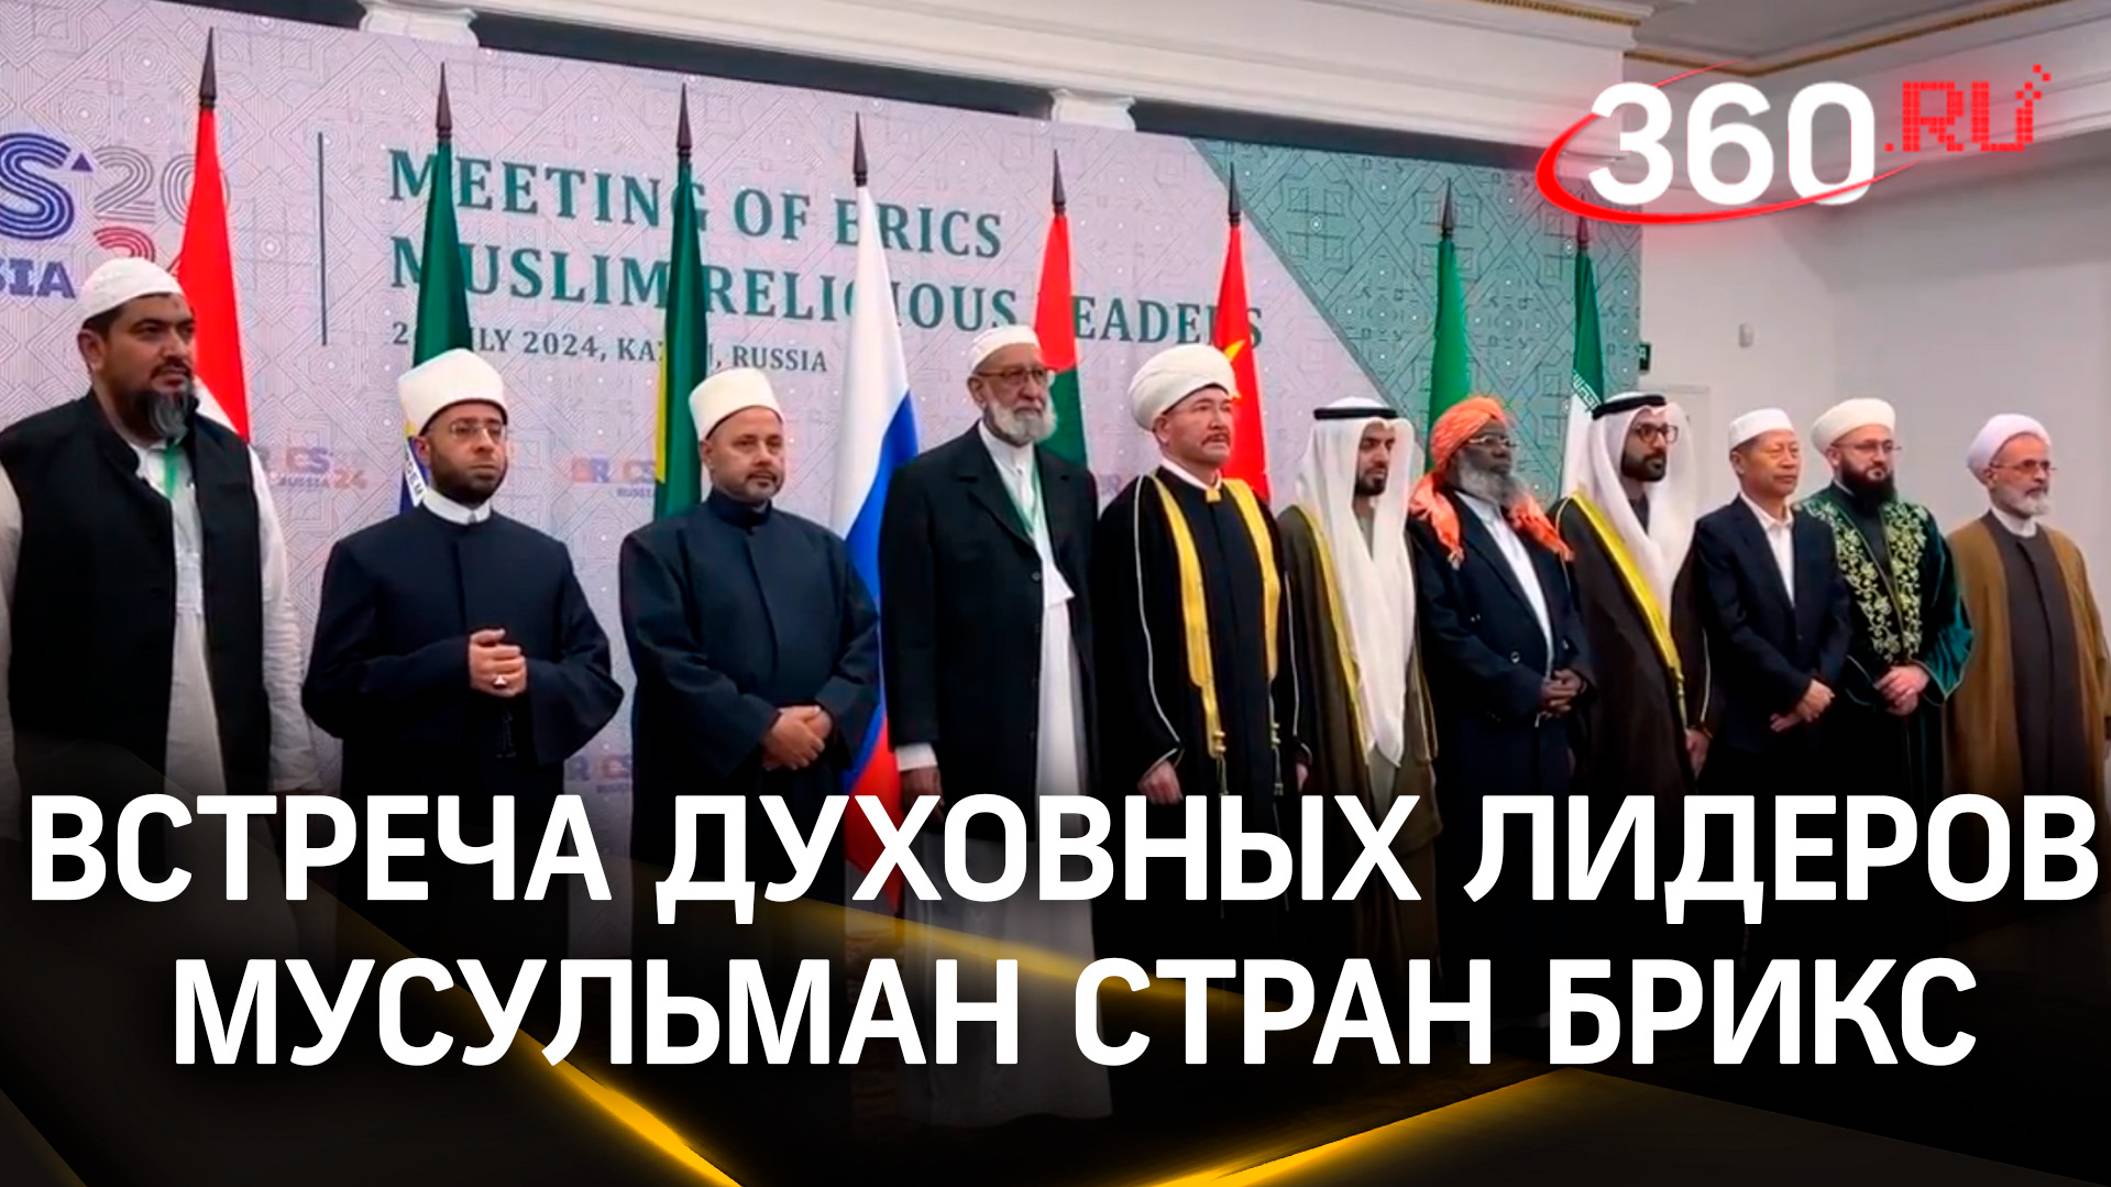 Лидеры мусульманских религиозных организаций стран БРИКС подписали резолюцию в Казани